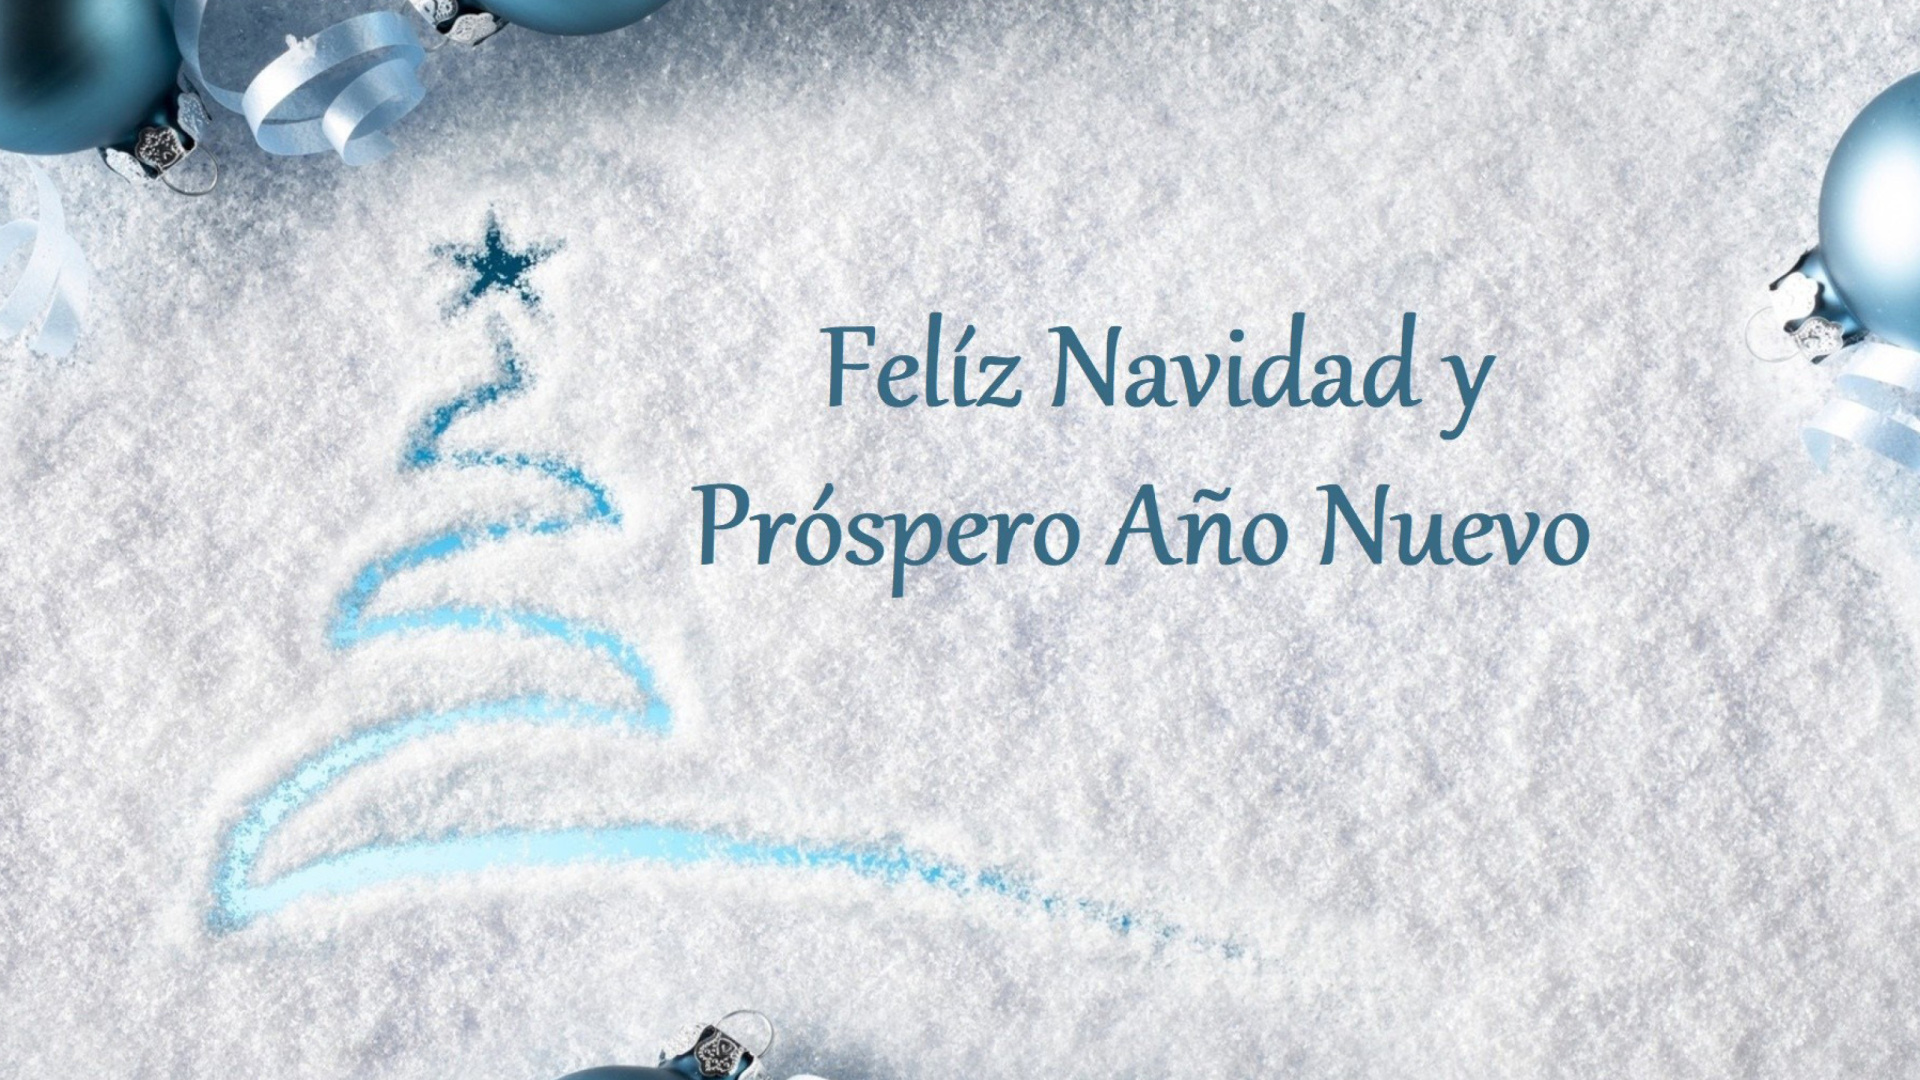 Feliz Navidad y Prospero Ano Nuevo wallpaper 1920x1080